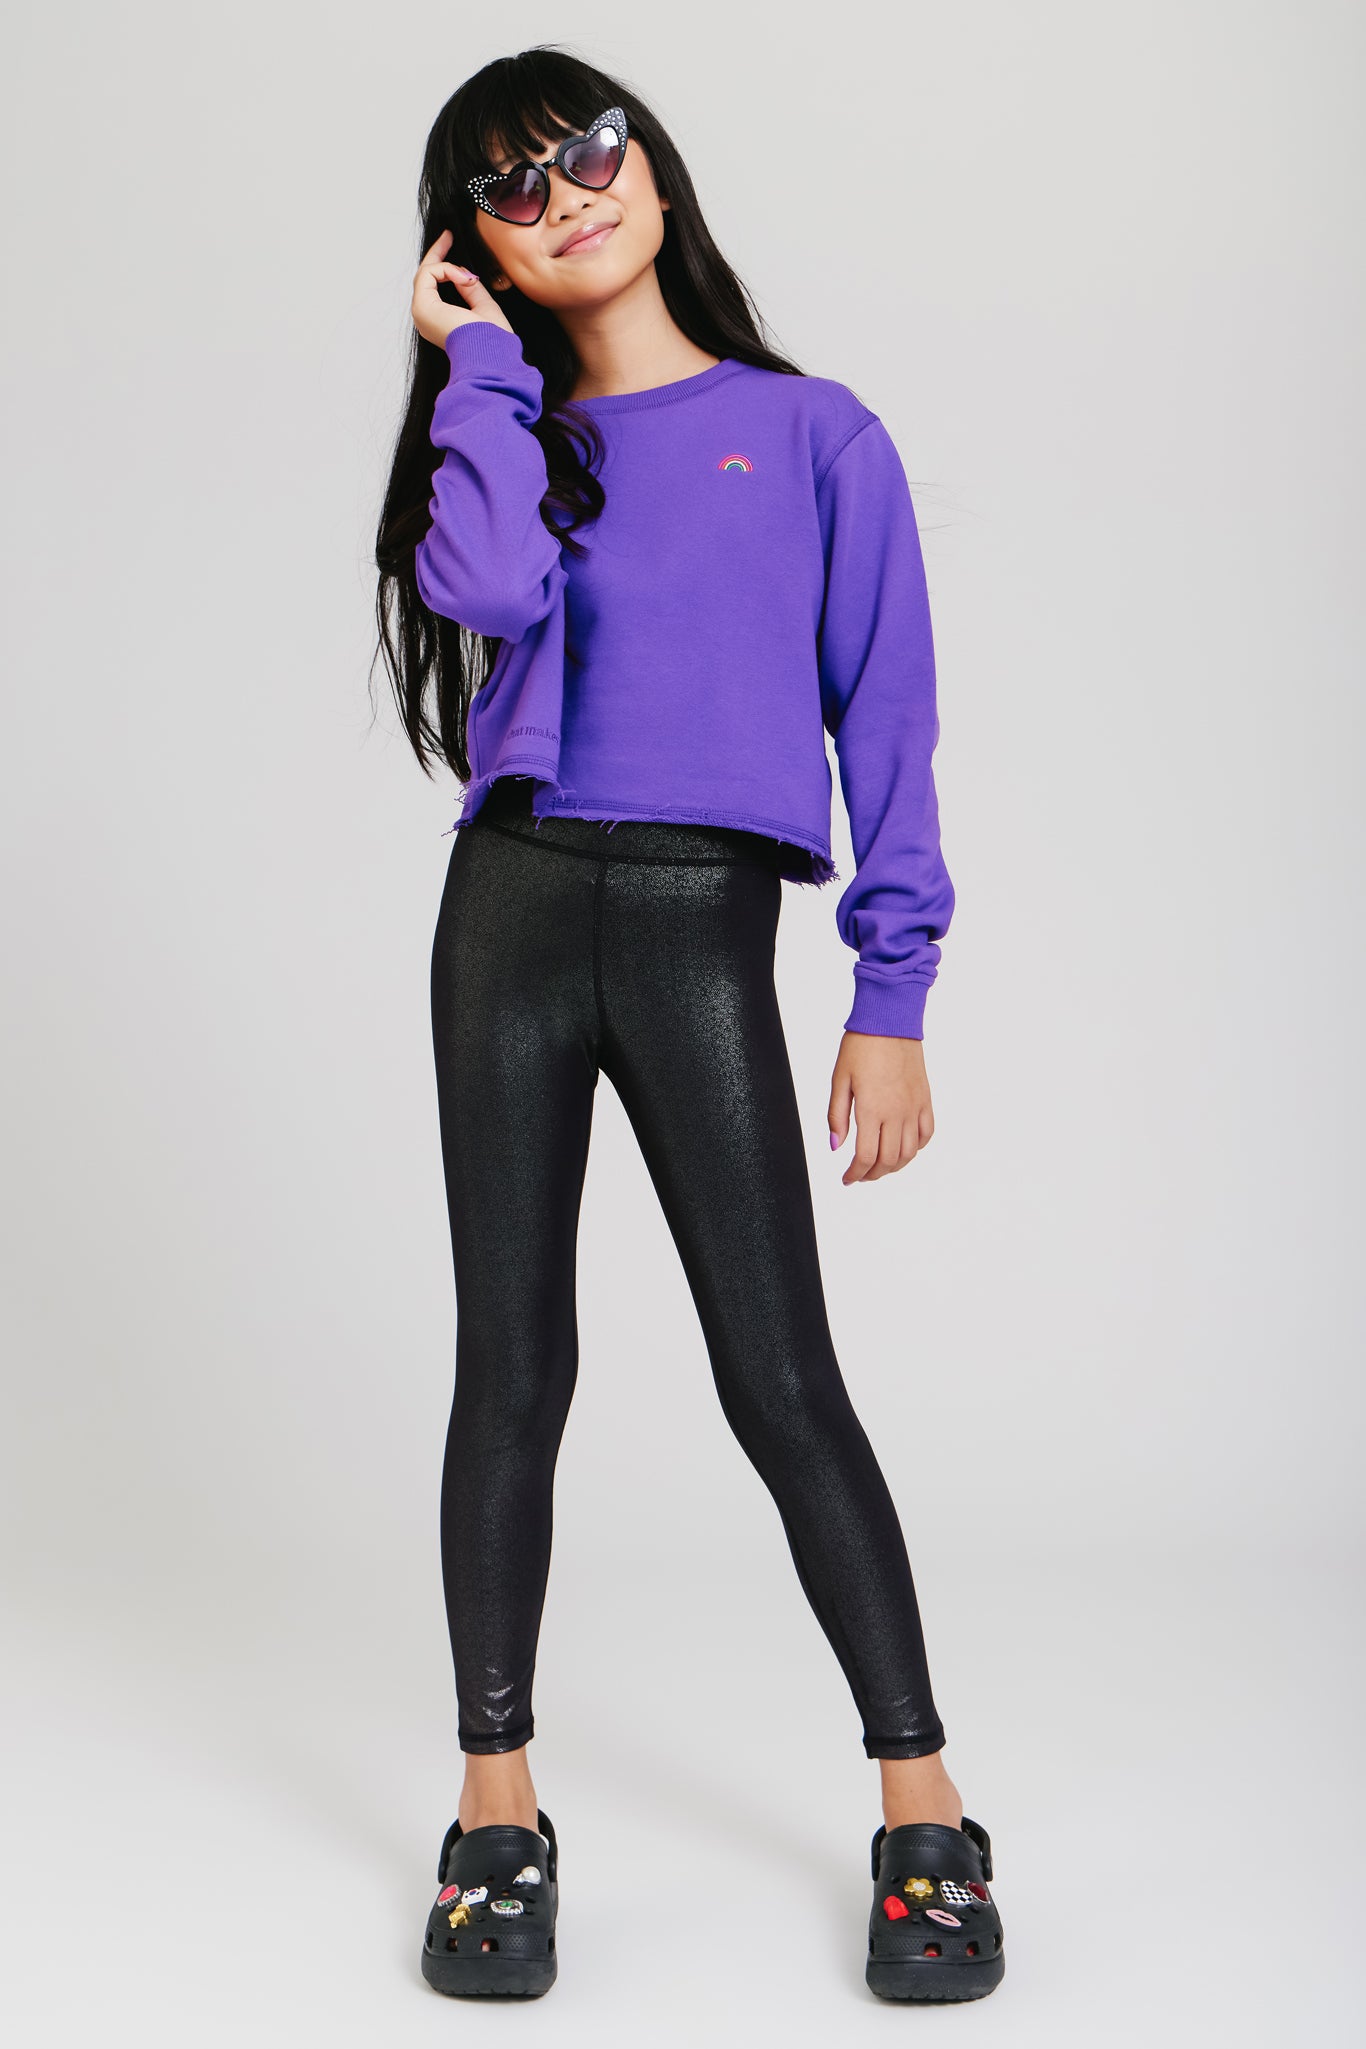 Lilax Girls' Basic Solid Full Length Leggings 2T Black 